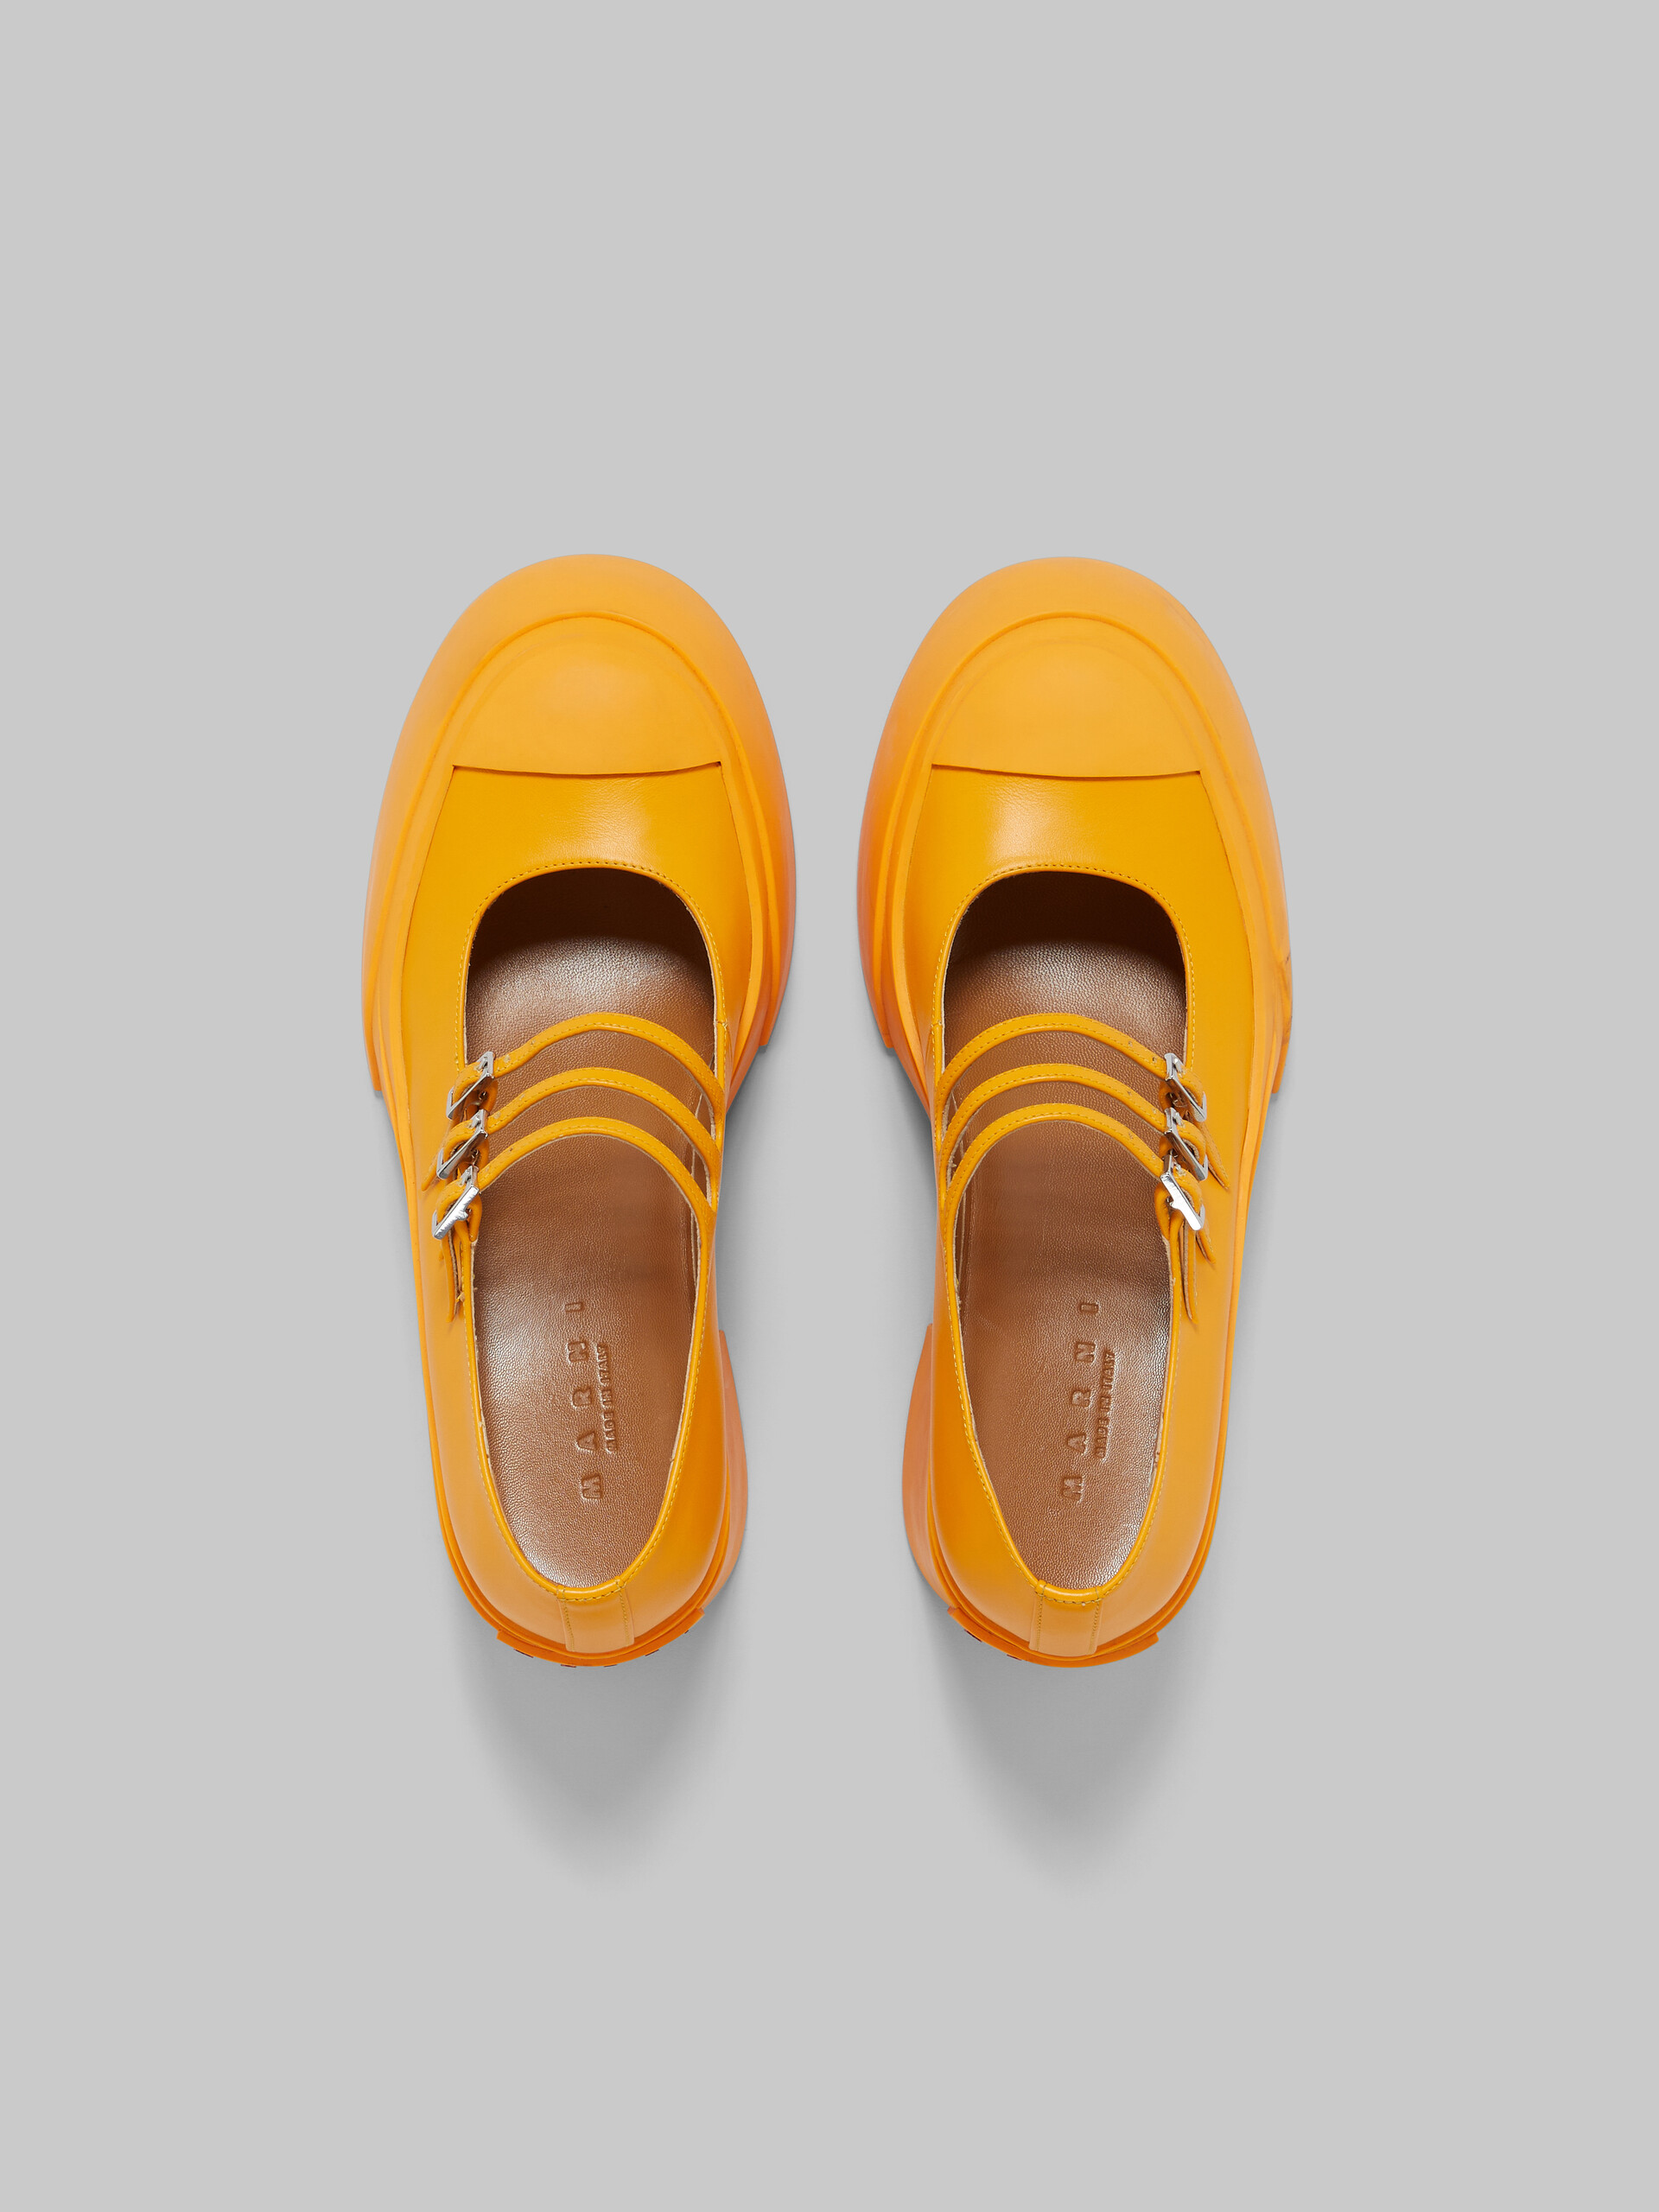 Zapatos Pablo estilo Mary Jane con triple hebilla de piel negra - Sneakers - Image 4